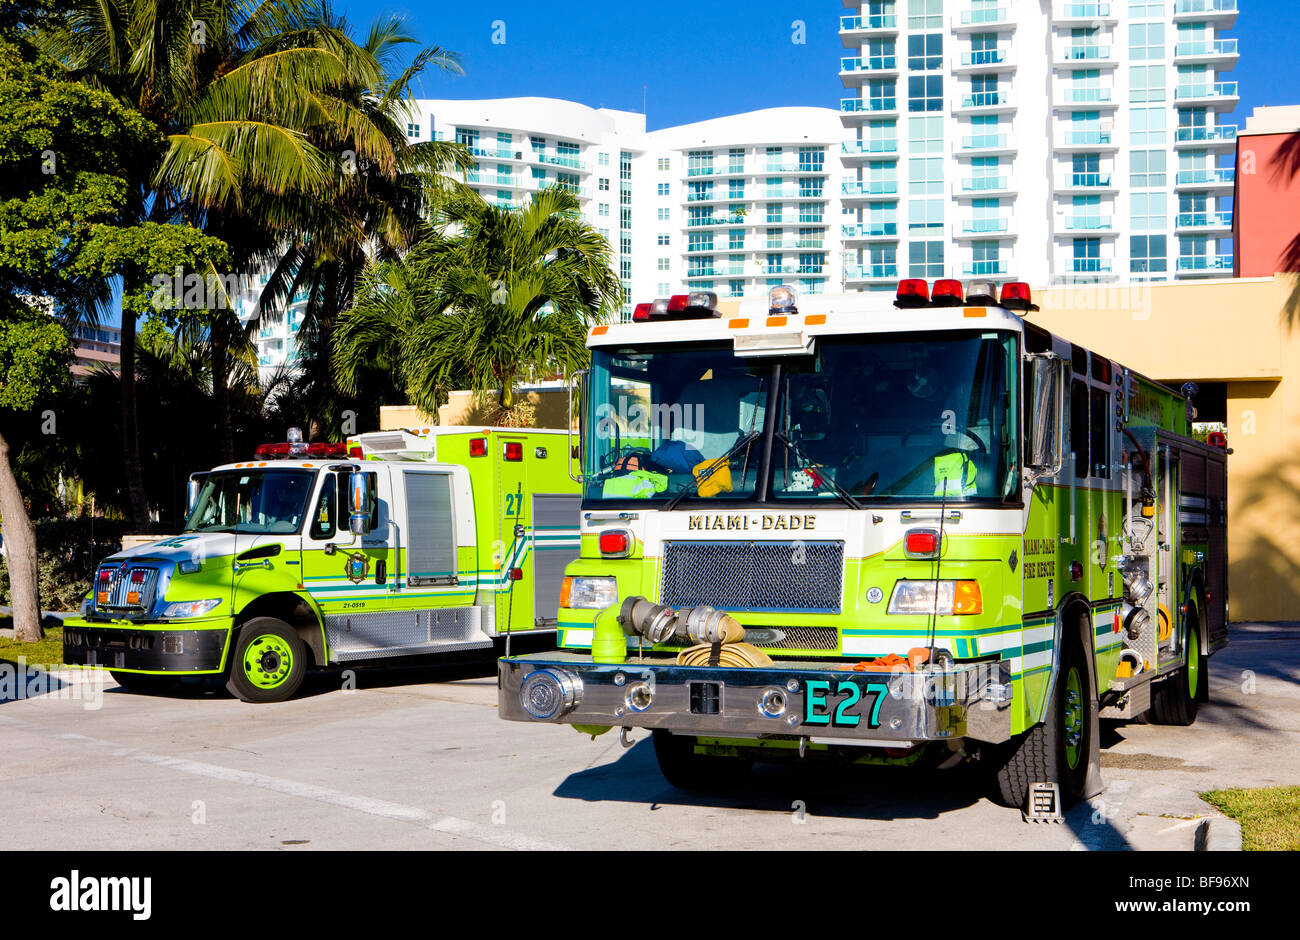 fire engines, Miami, Florida, USA Stock Photo